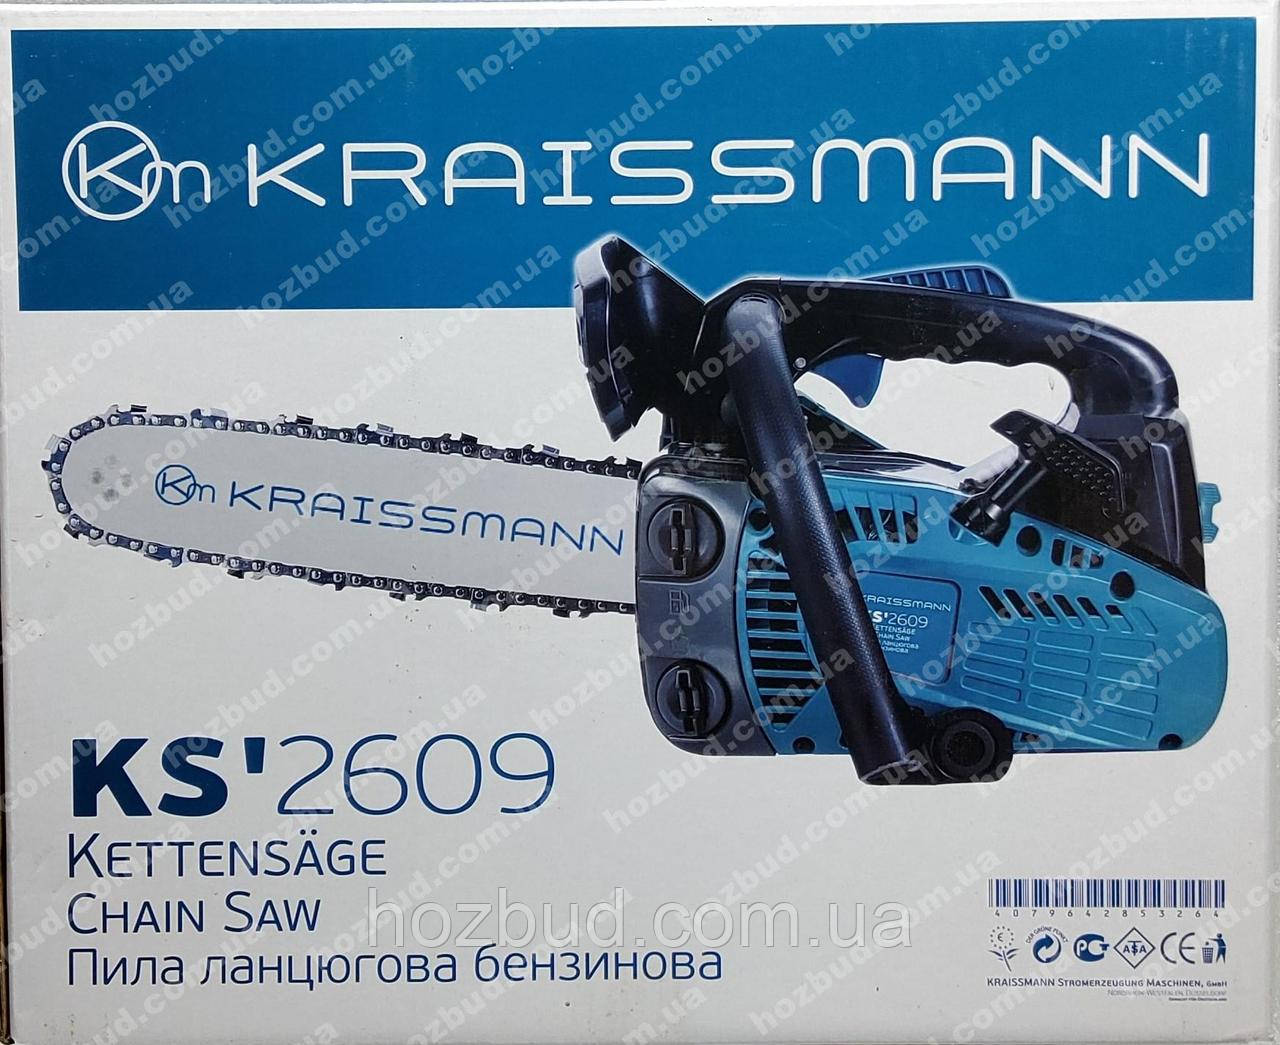 Бензопила Kraissmann KS 2609